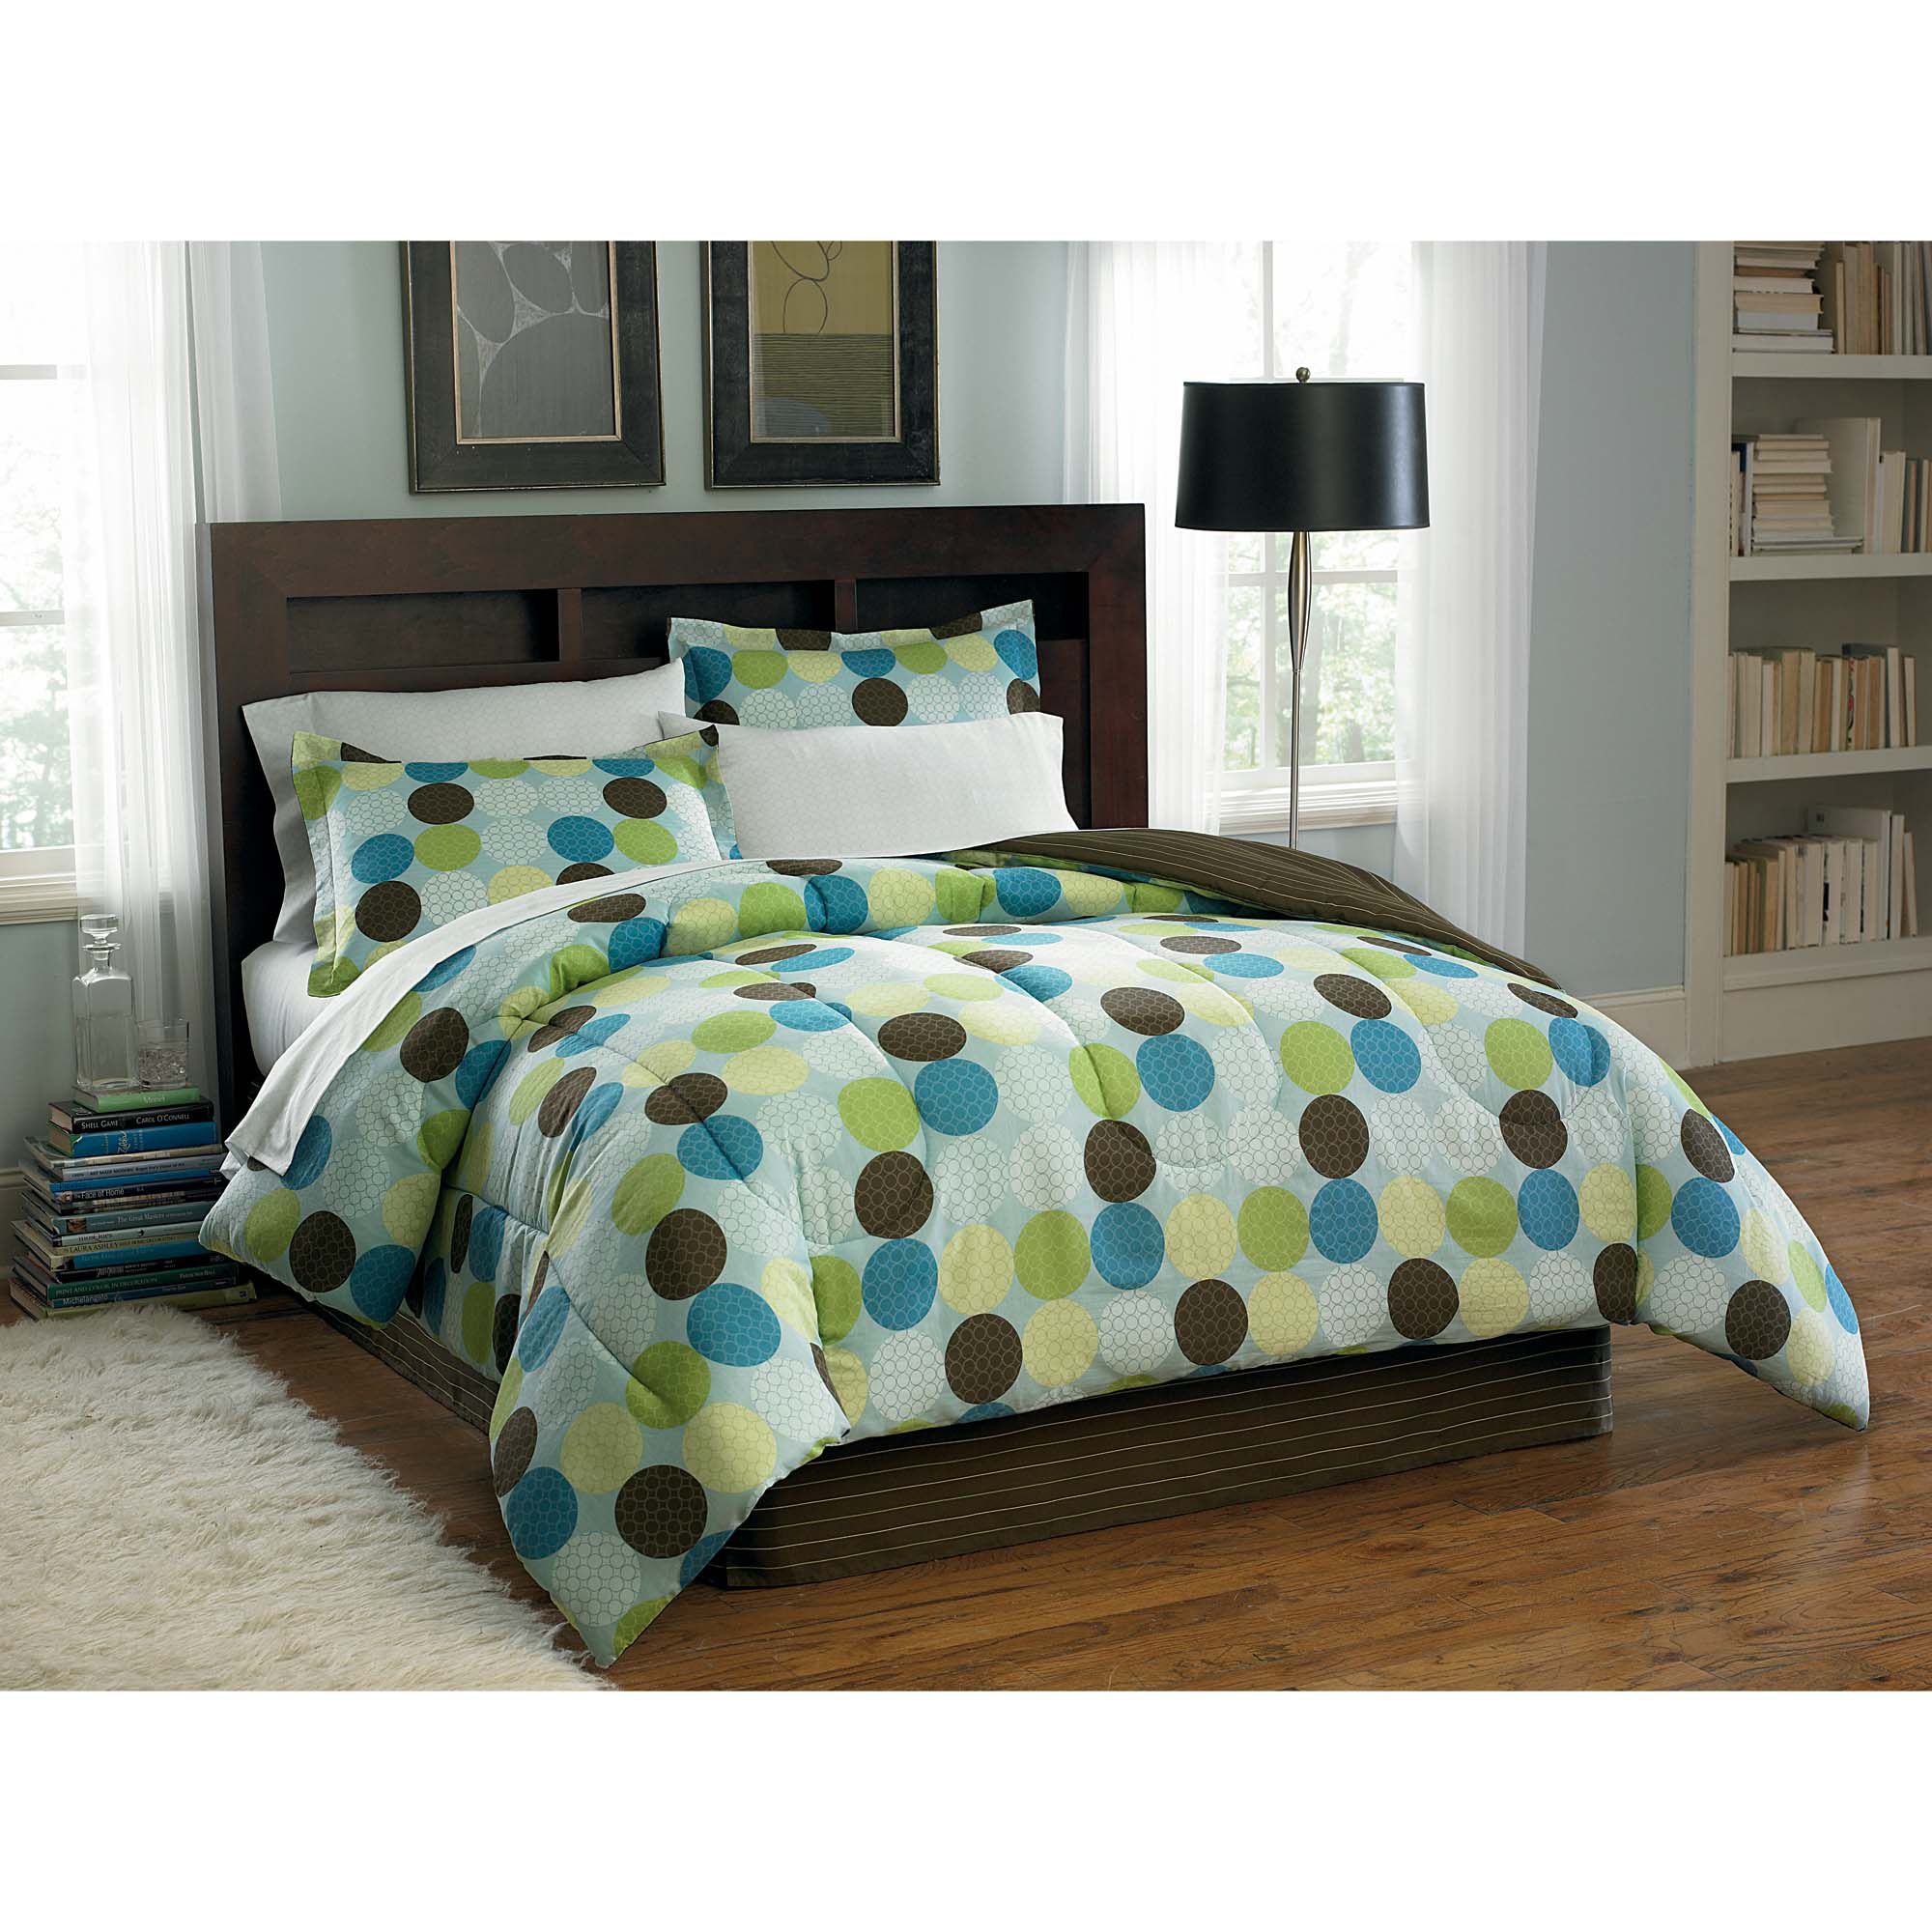 Colormate Dori Polka Dot Complete Bed Set